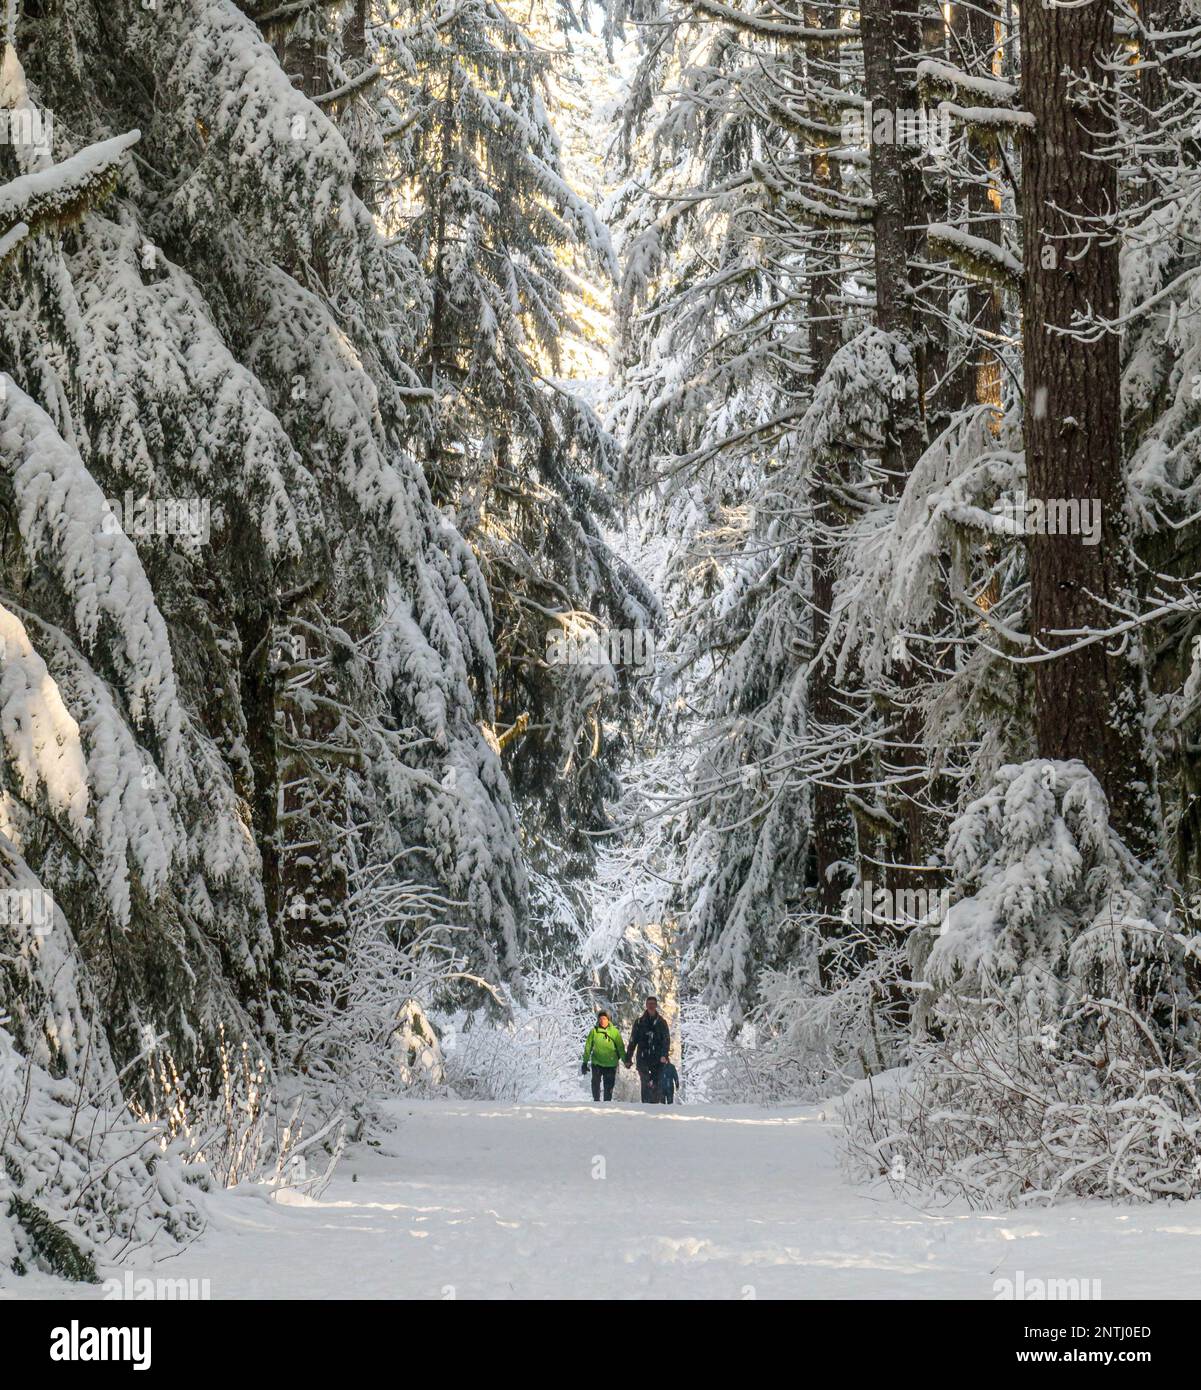 Deux personnes marchant sur le sentier après une chute de neige fraîche en Colombie-Britannique. Forte neige sur les grands arbres, dense forêt intacte. Banque D'Images